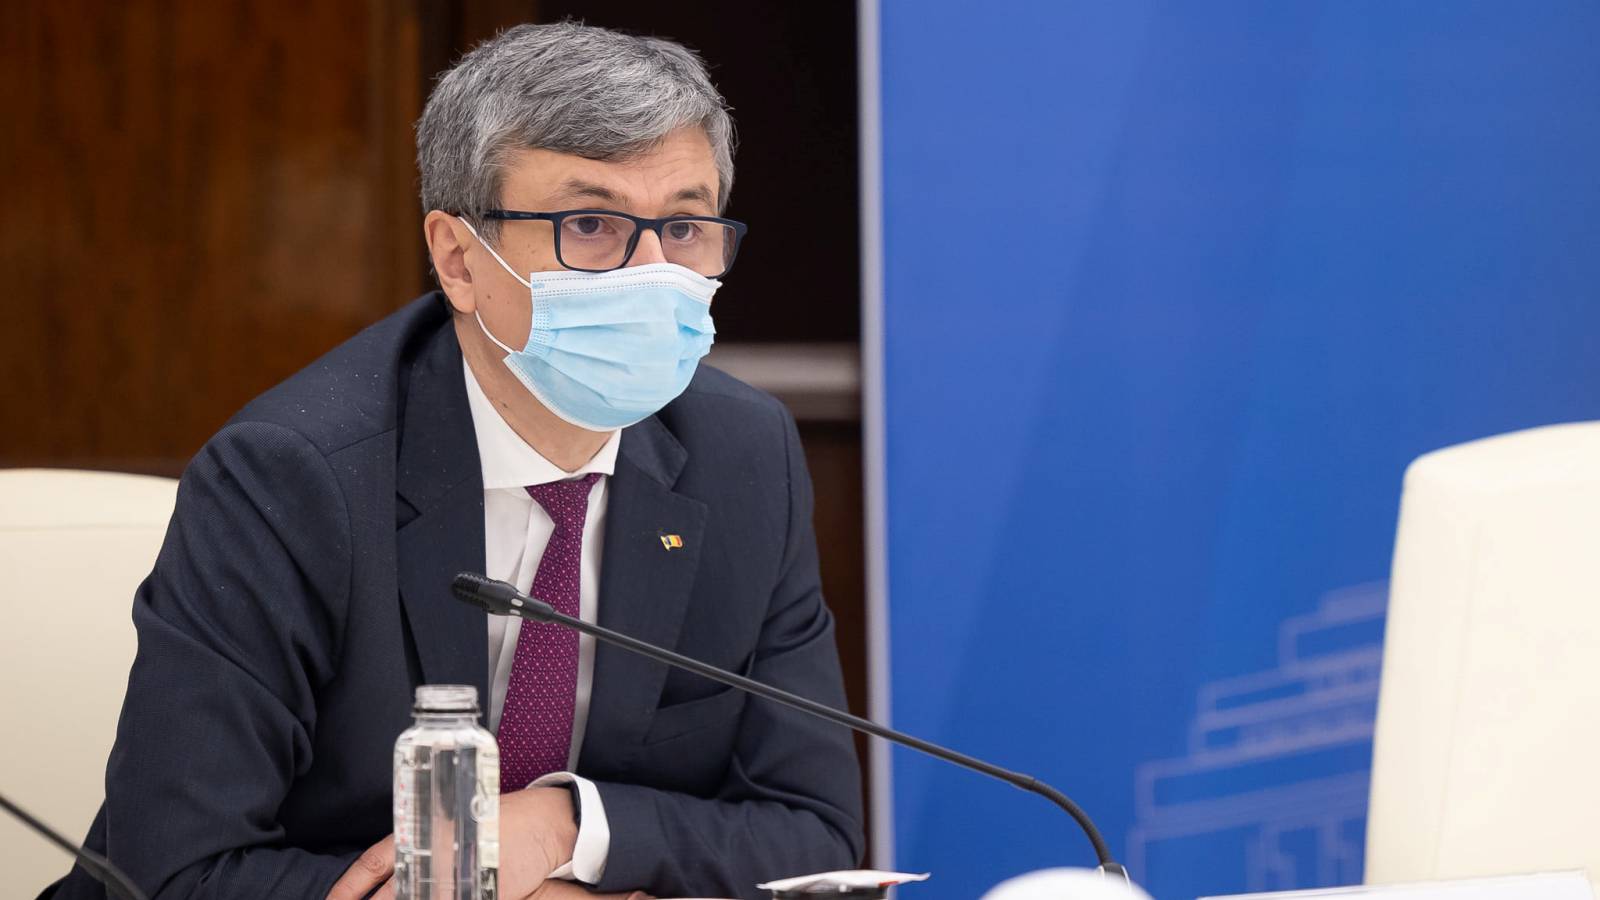 Virgil Popescu Conferma ufficiale delle misure per tutti i rumeni